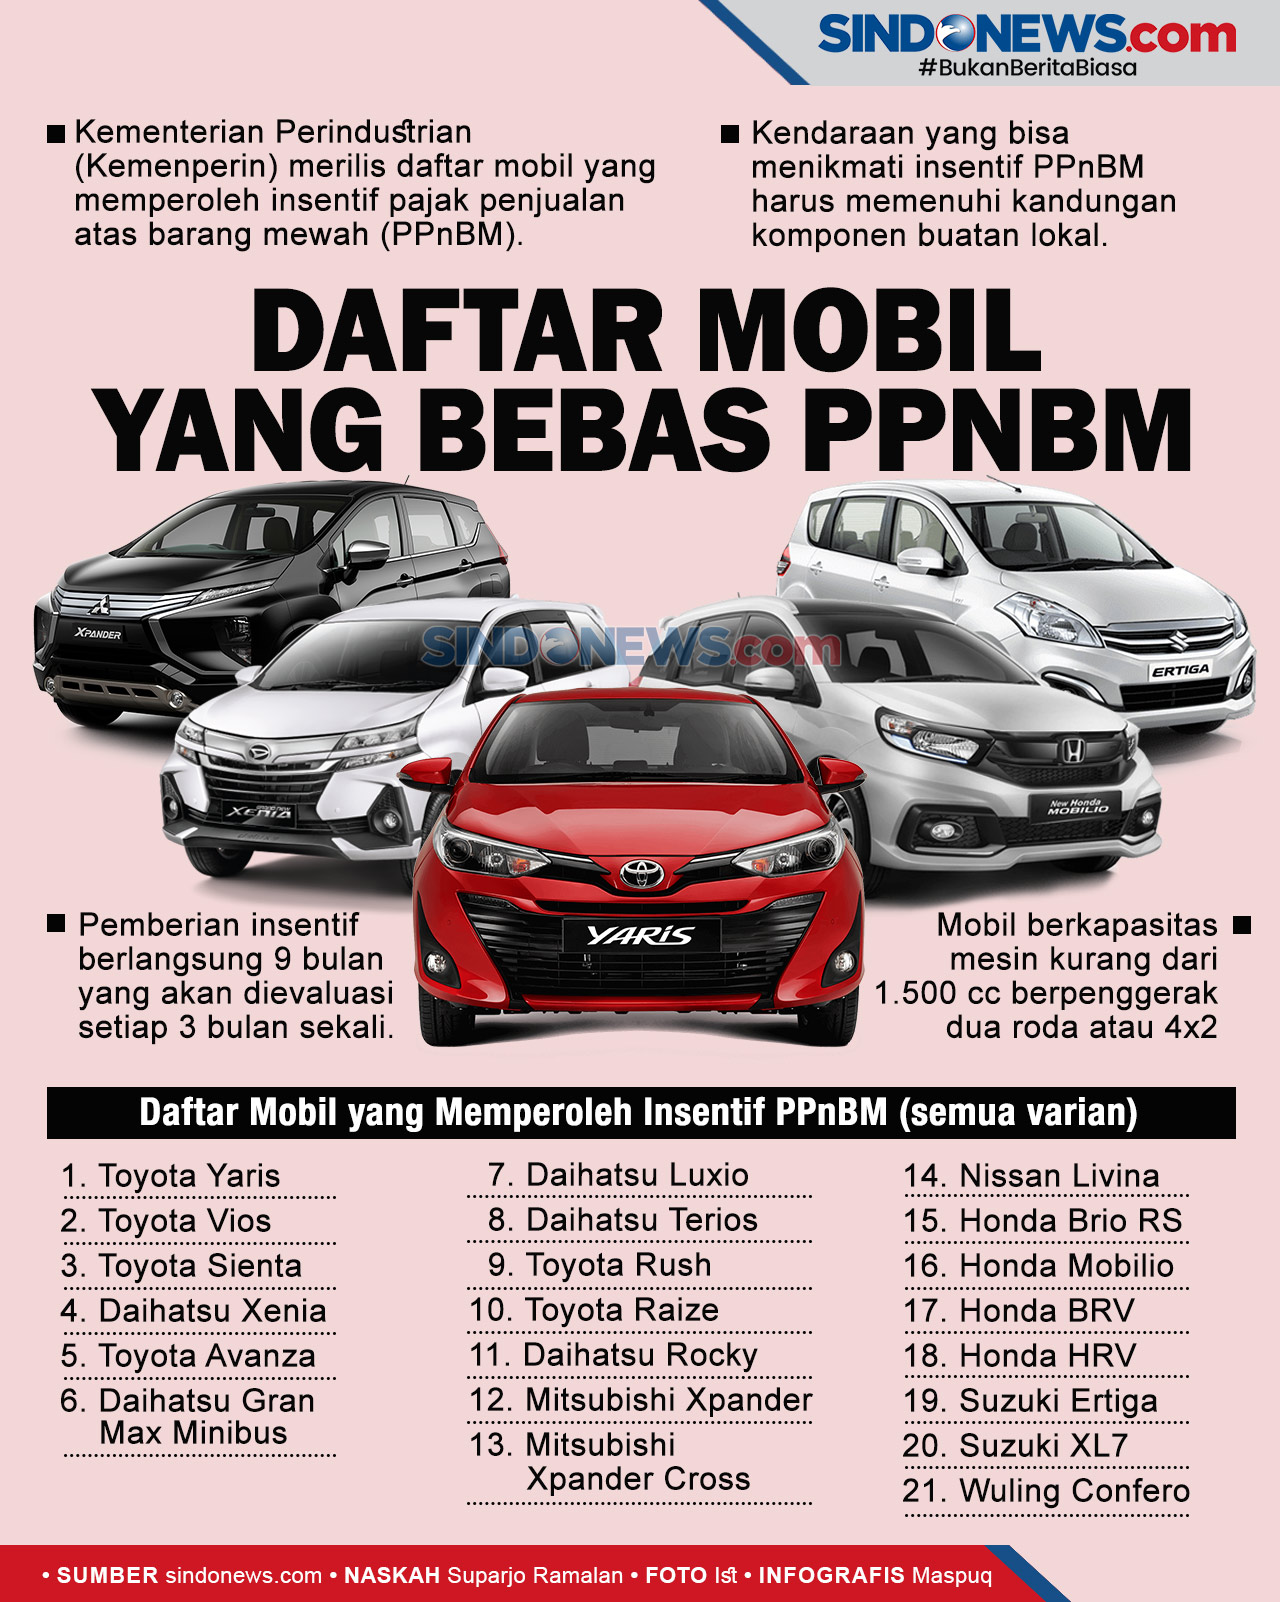 Daftar Mobil yang Dapat Insentif PPnBM - News+ on RCTI+